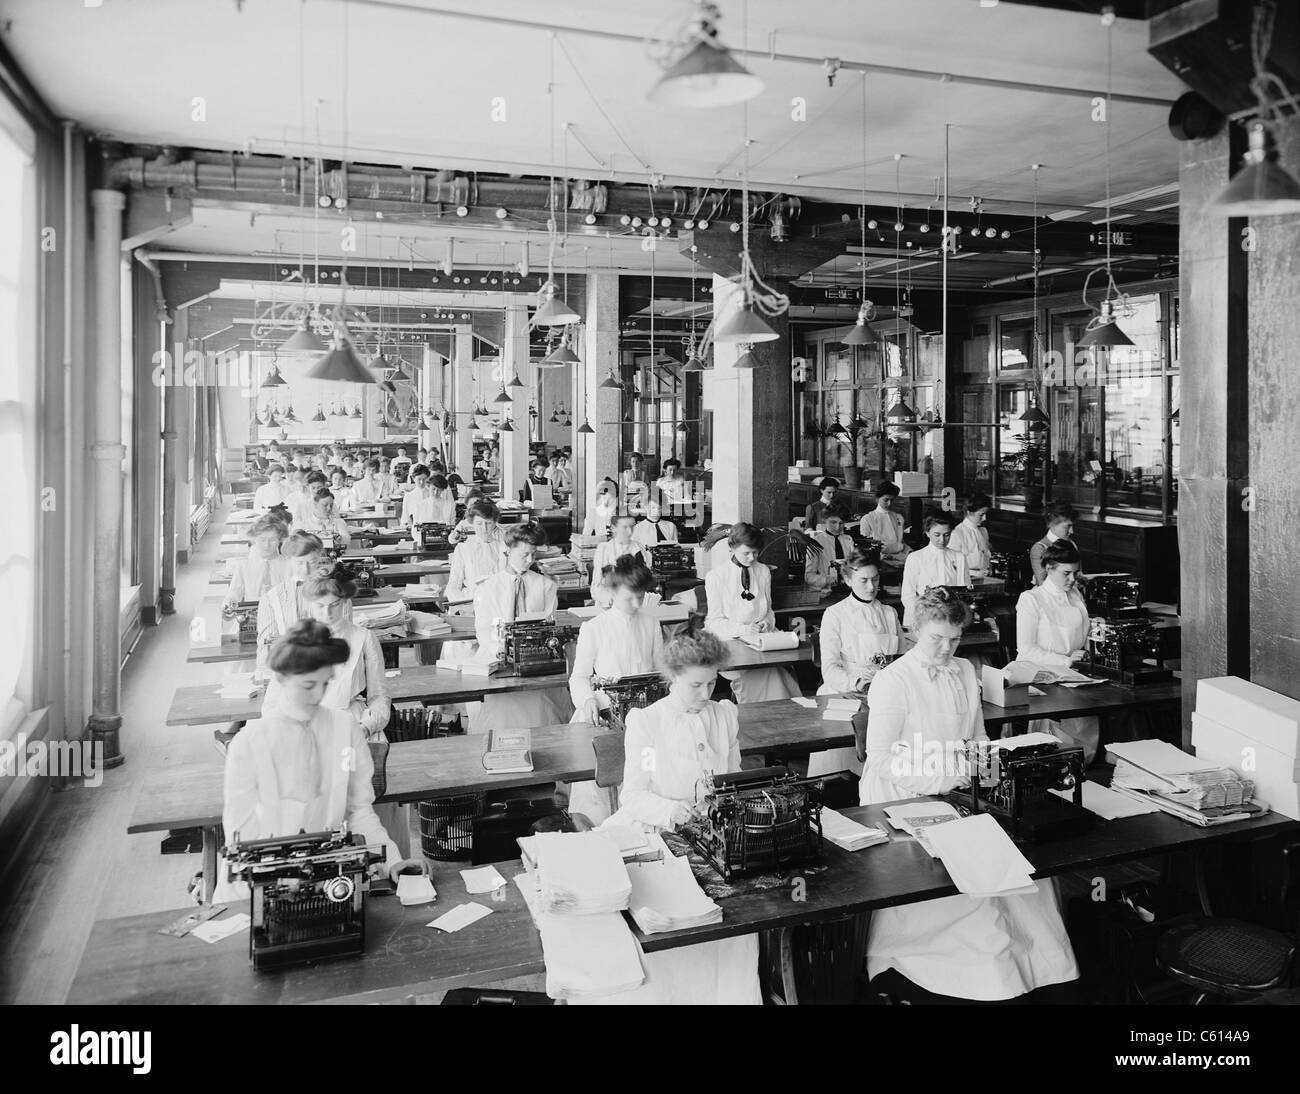 Maschinenschreiben-Abteilung bei der National Cash Register Company Dayton Ohio. Bild zeigt viele Tippfehler junge Frauen gekleidet in Stehkragen lange Ärmel Blusen mit verschiedenen Formen von Krawatten. Ca. 1902. (BSLOC 2010 18 90) Stockfoto